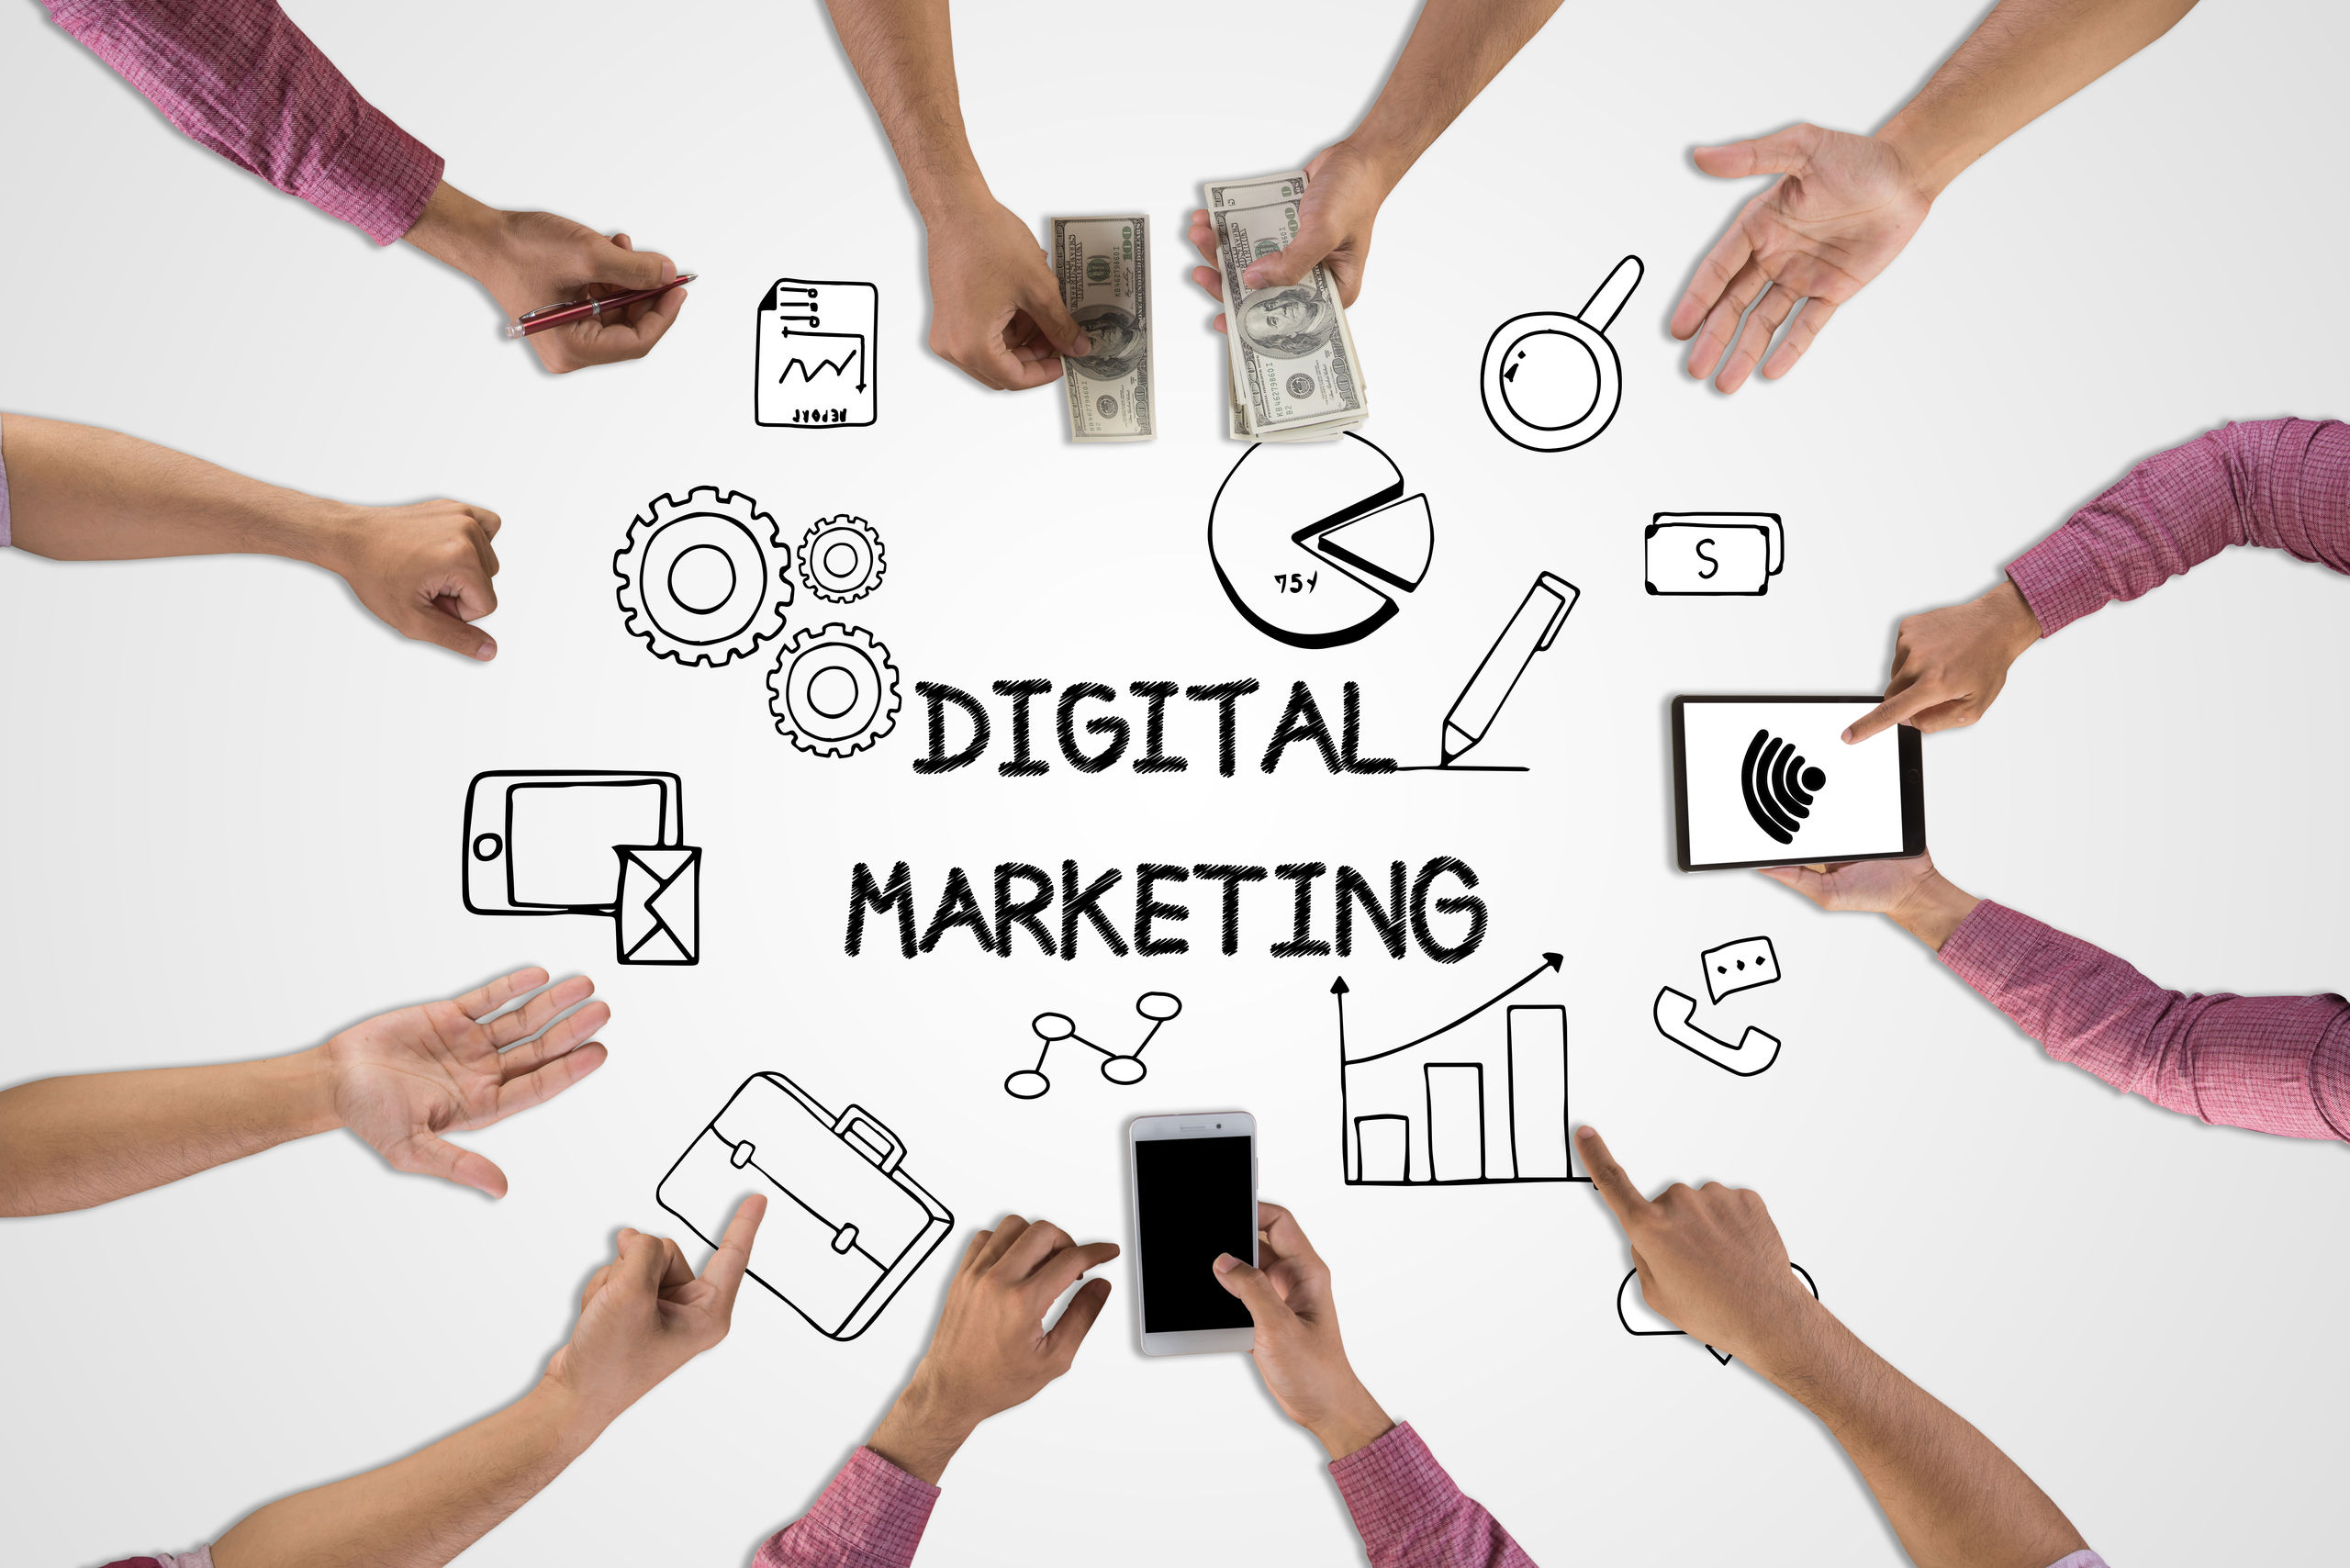 Máster en marketing digital: especialízate y elige tu futuro profesional